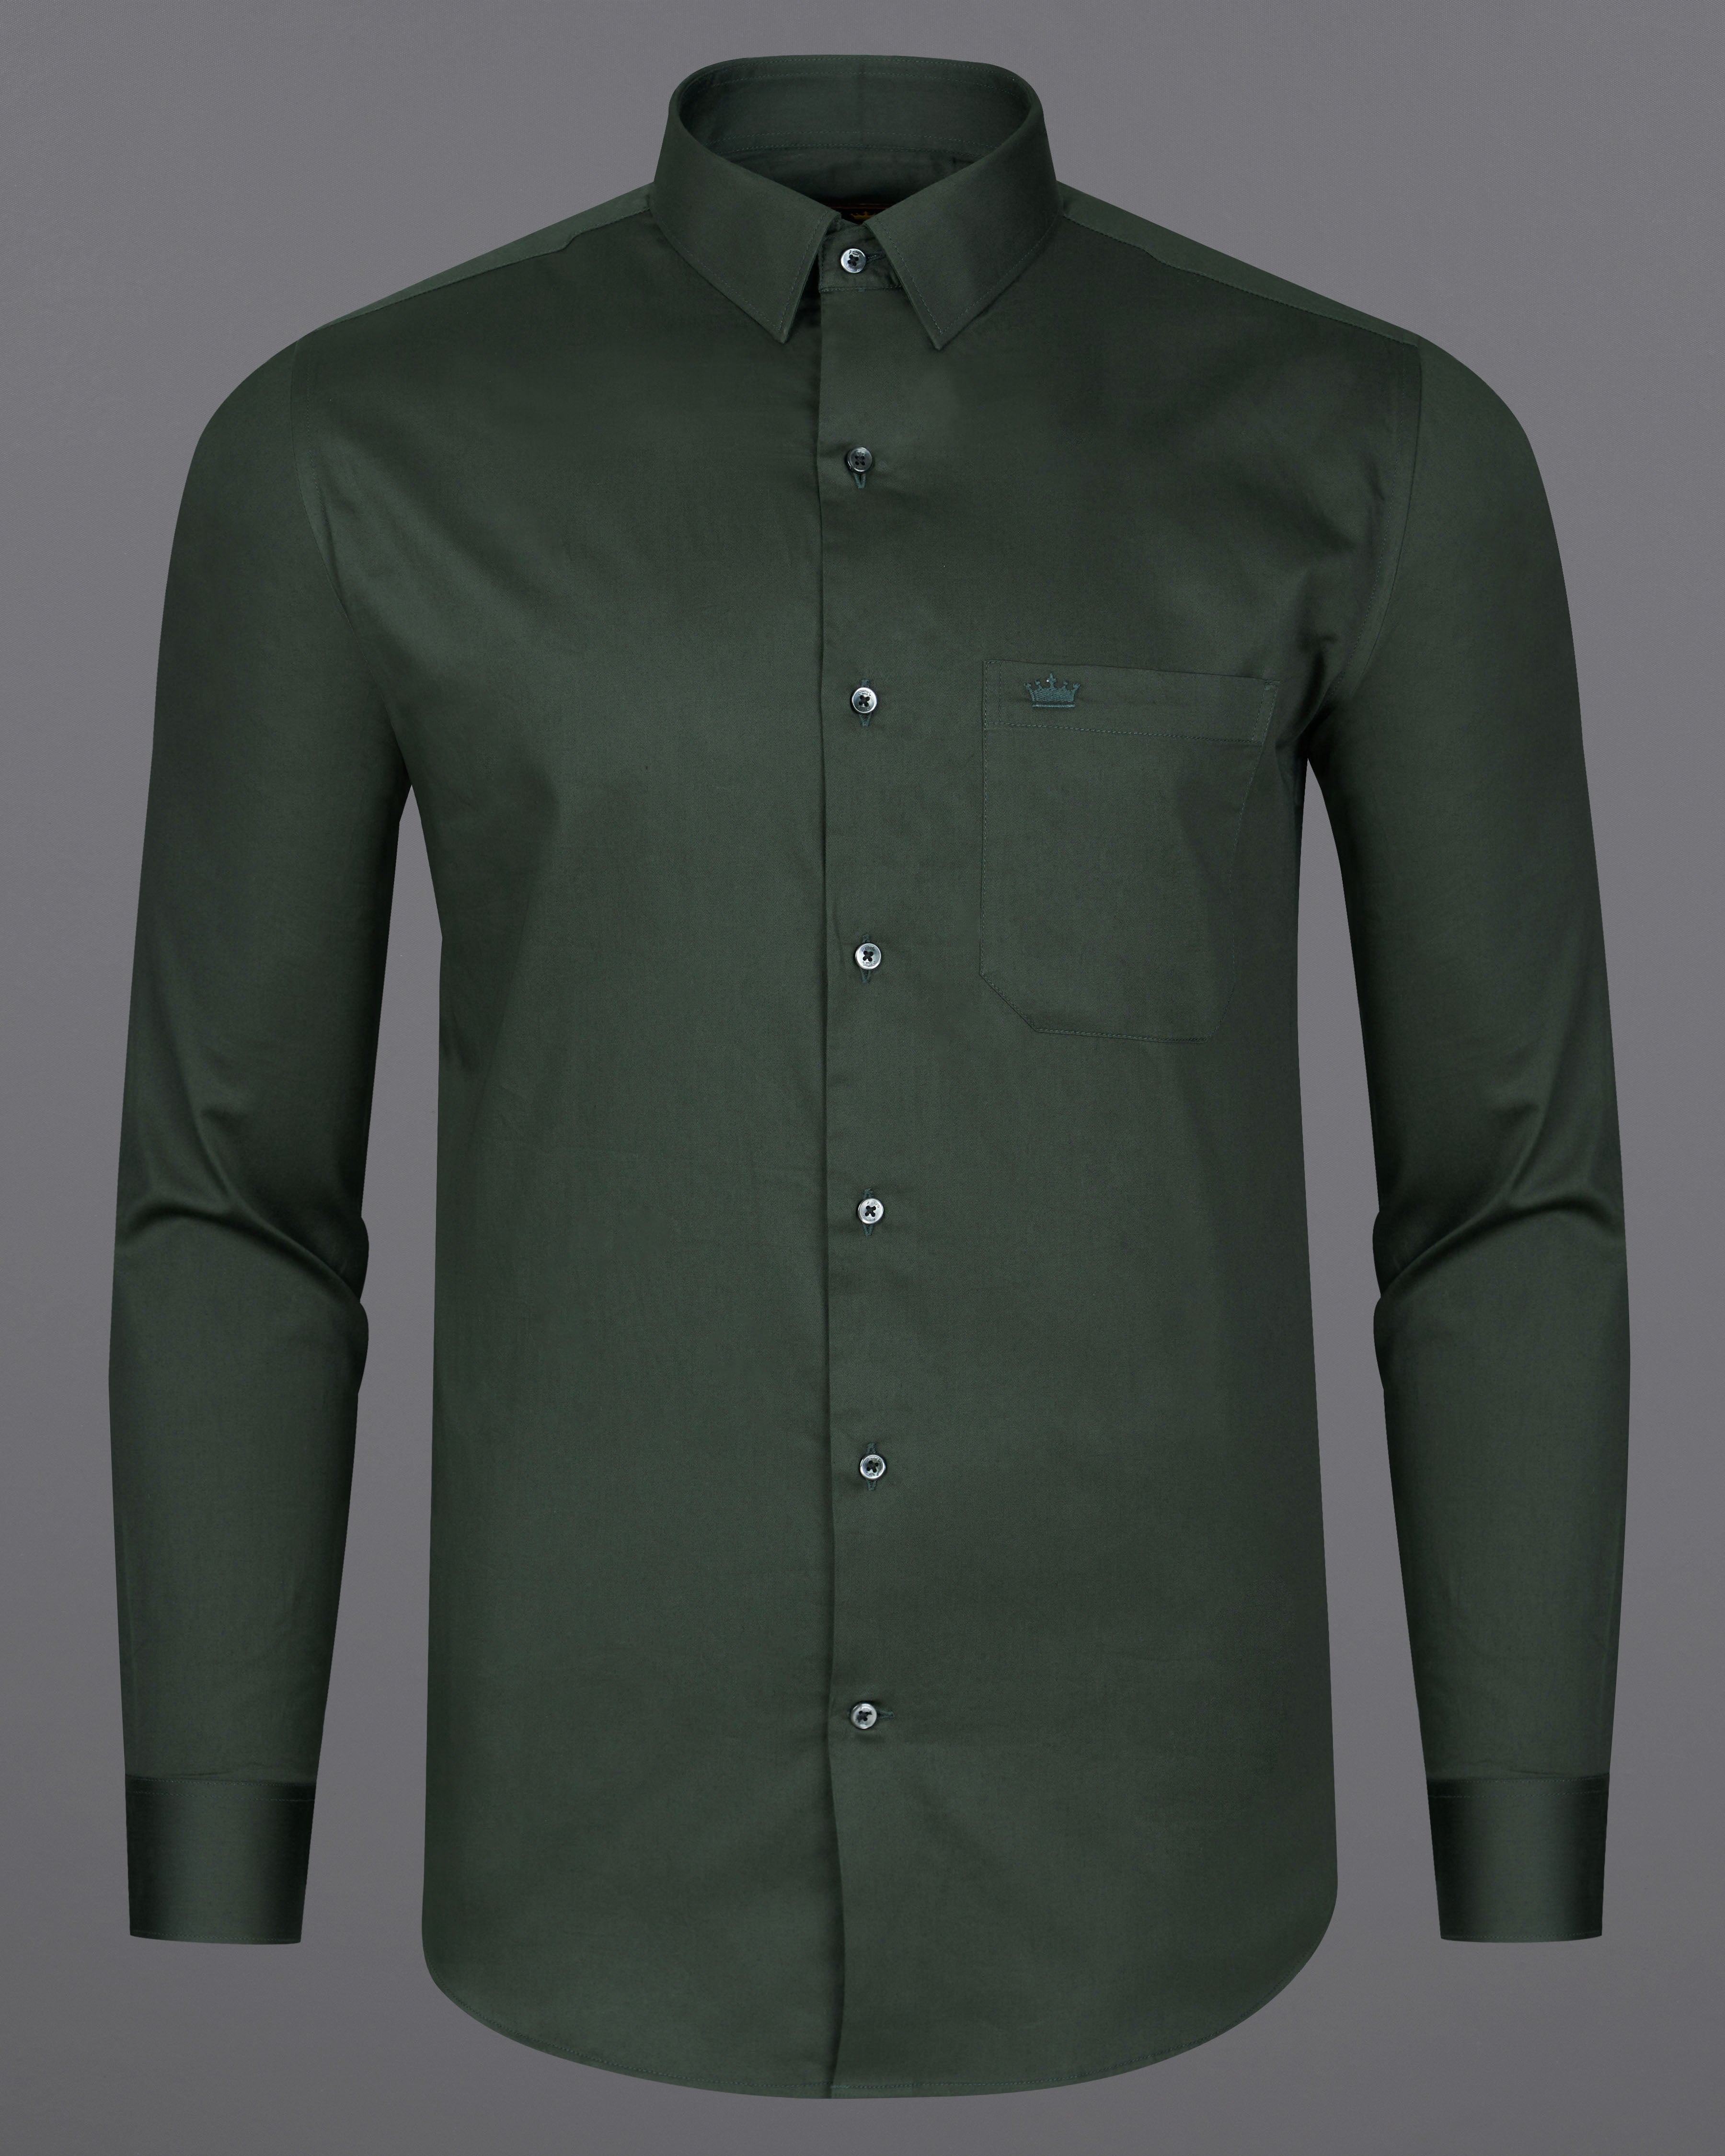 Timber Green Subtle Sheen Super Soft Premium Cotton Shirt